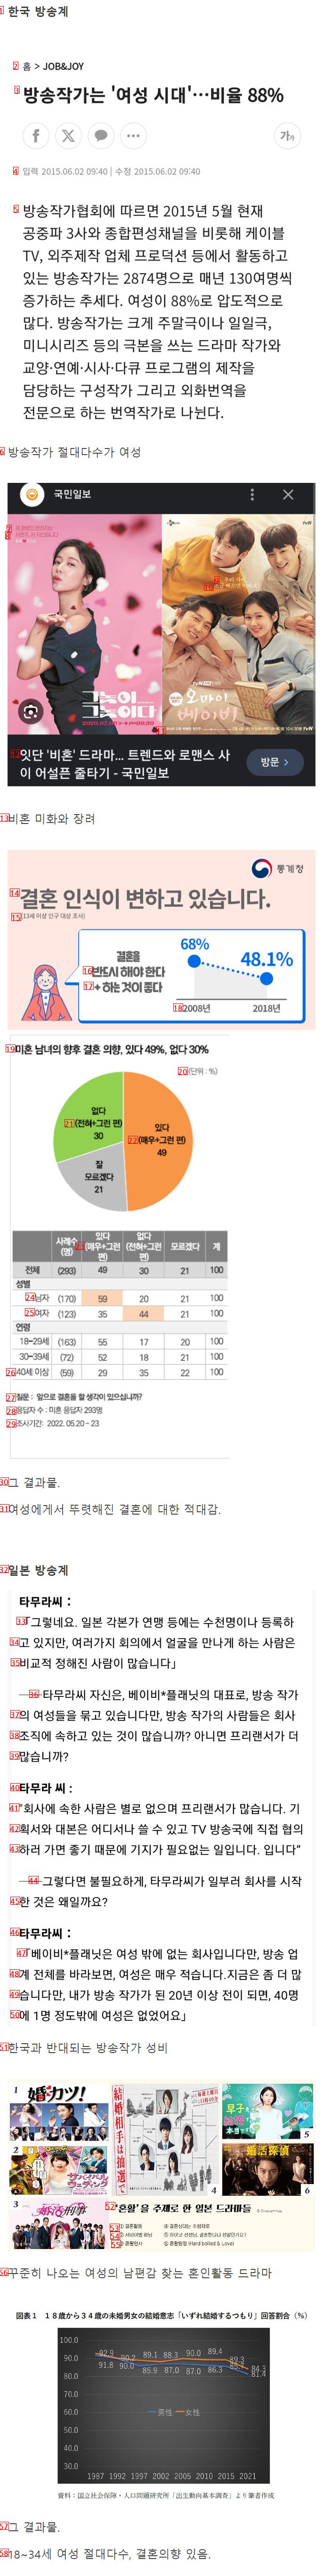 韓国放送vs日本放送の結果の近況